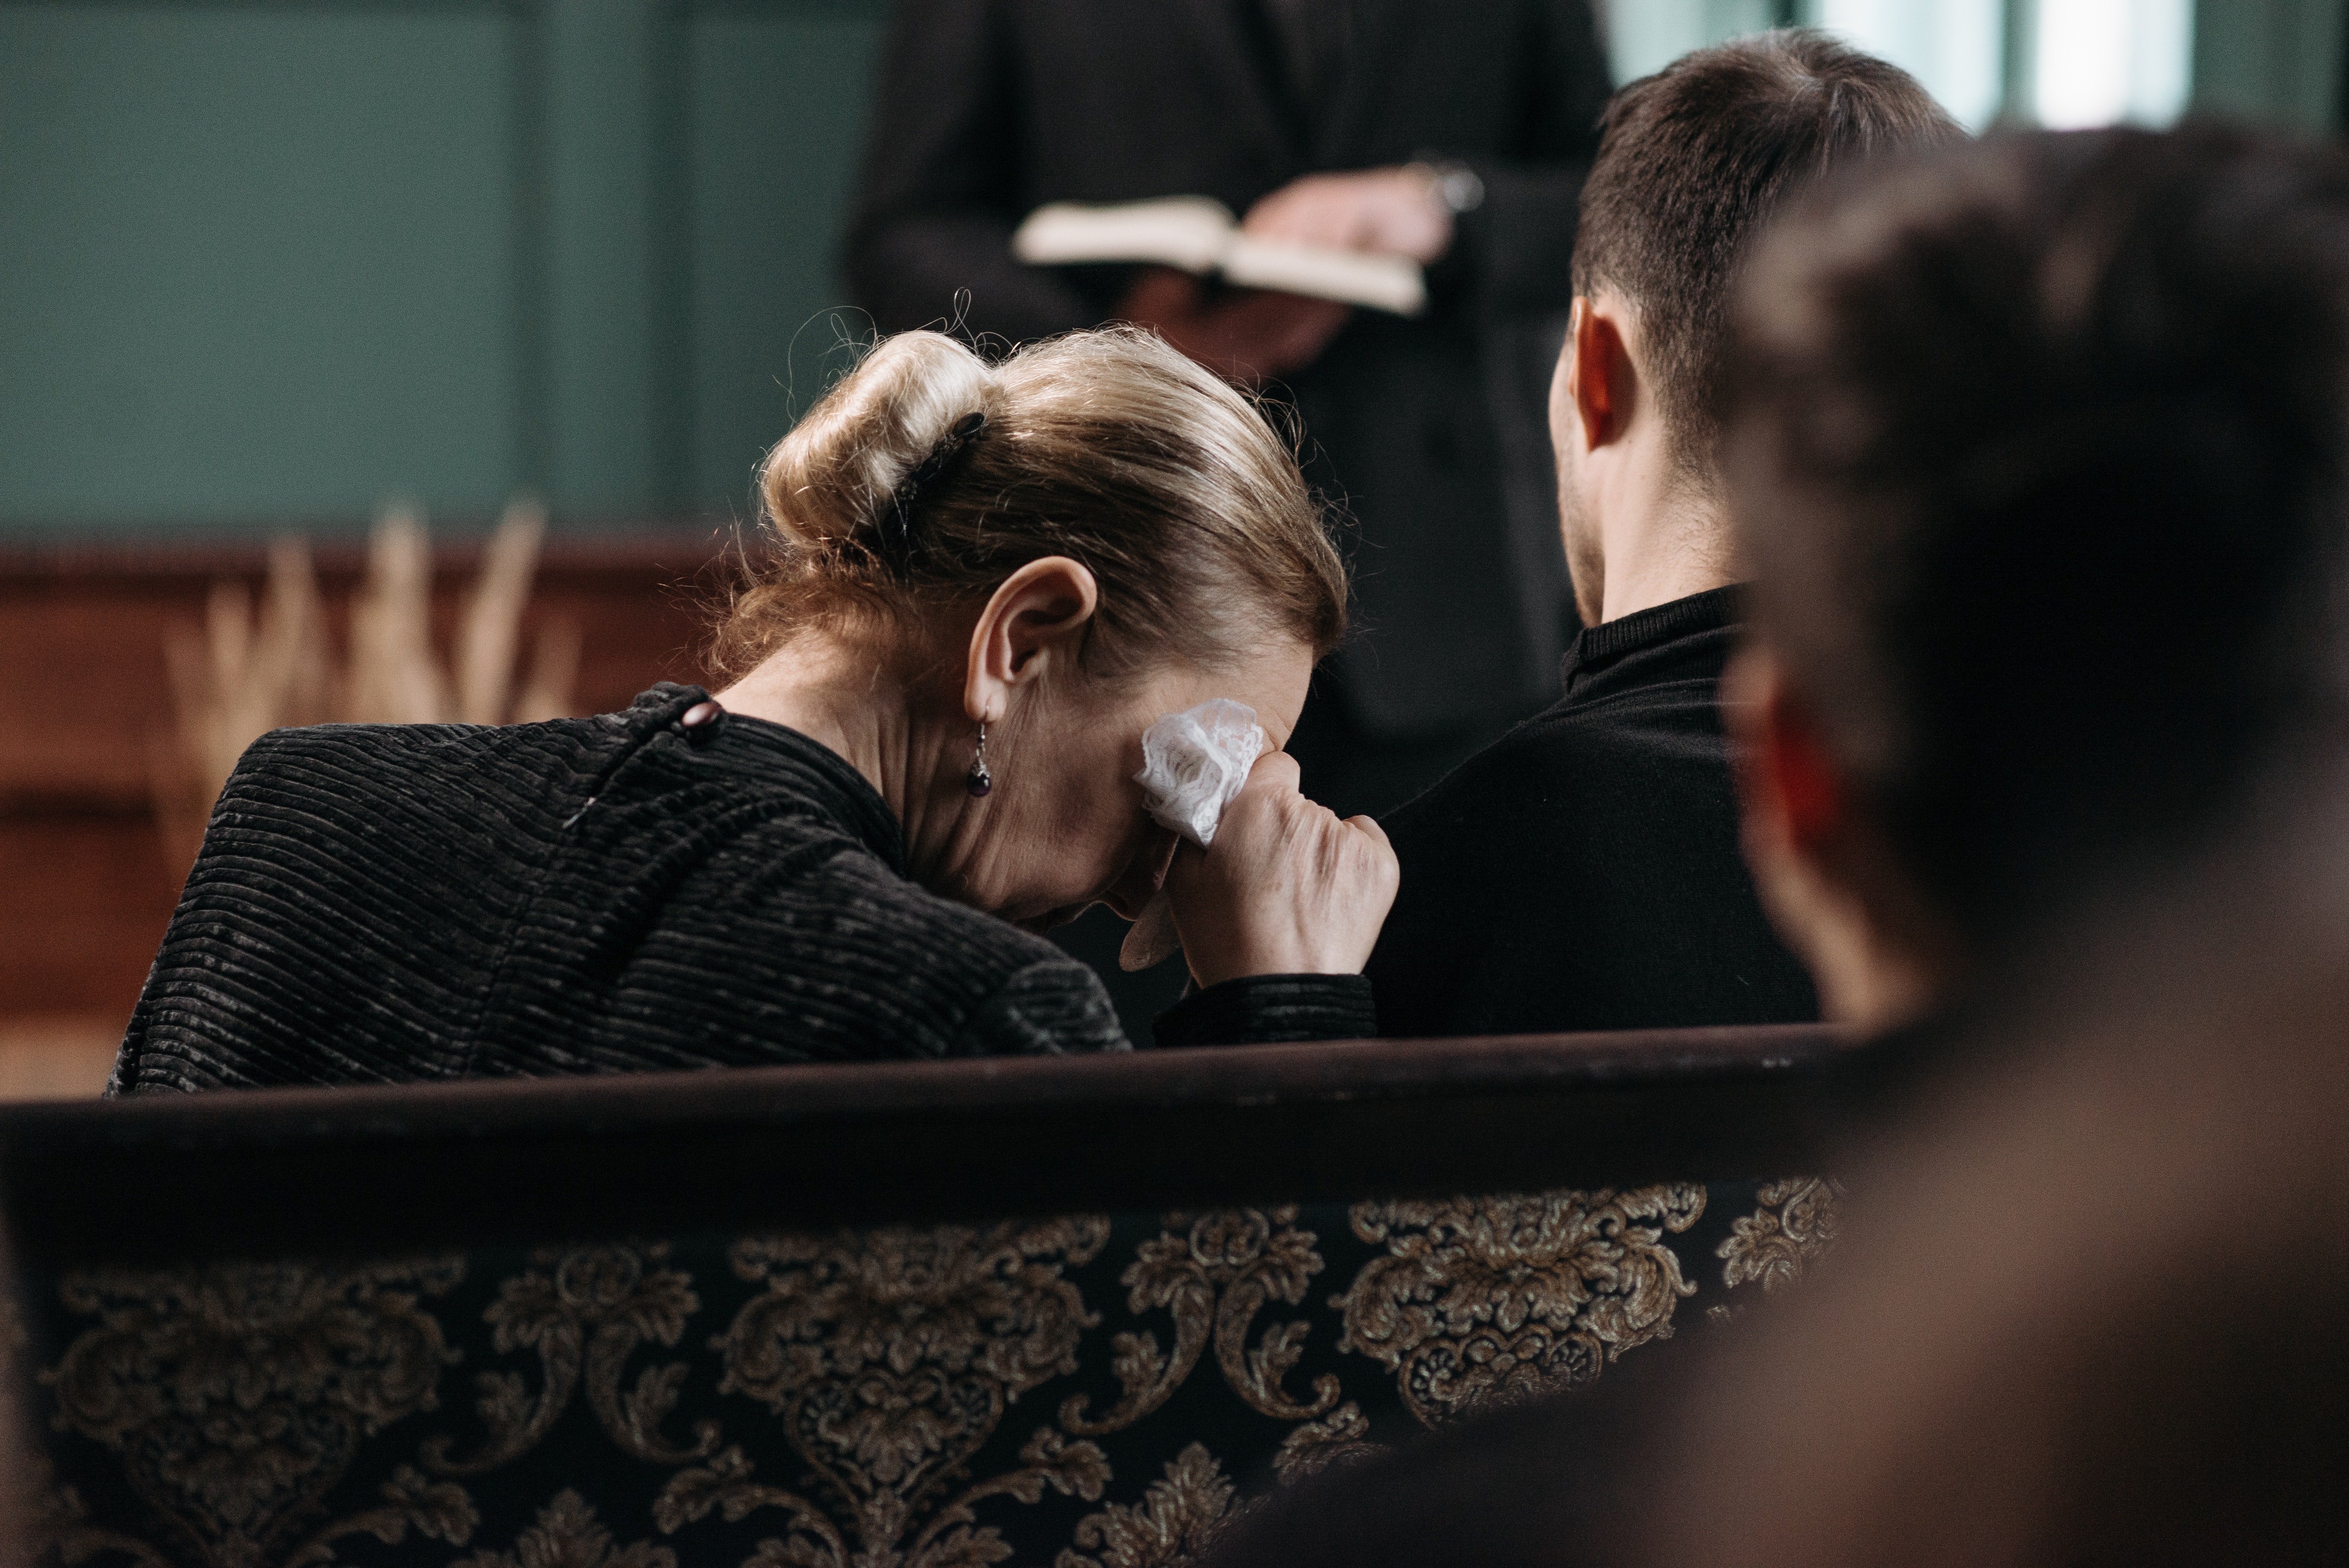 Claudia trauerte um ihren Mann bei seiner Beerdigung. | Quelle: Pexels